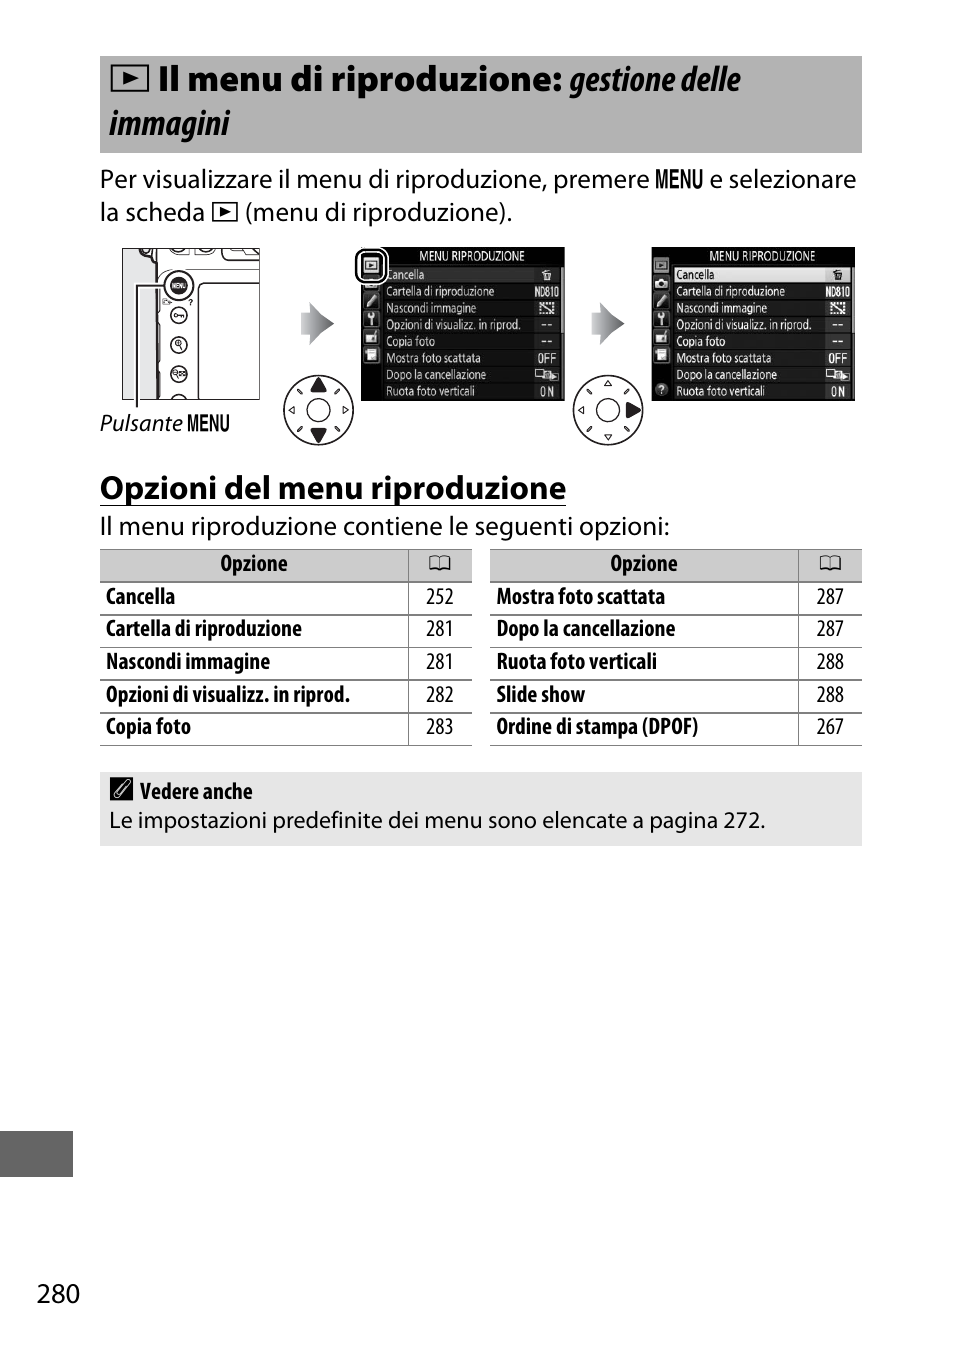 Il menu di riproduzione: gestione delle immagini, Opzioni del menu riproduzione, D il menu di riproduzione: gestione delle immagini | Nikon D810 Manuale d'uso | Pagina 304 / 533